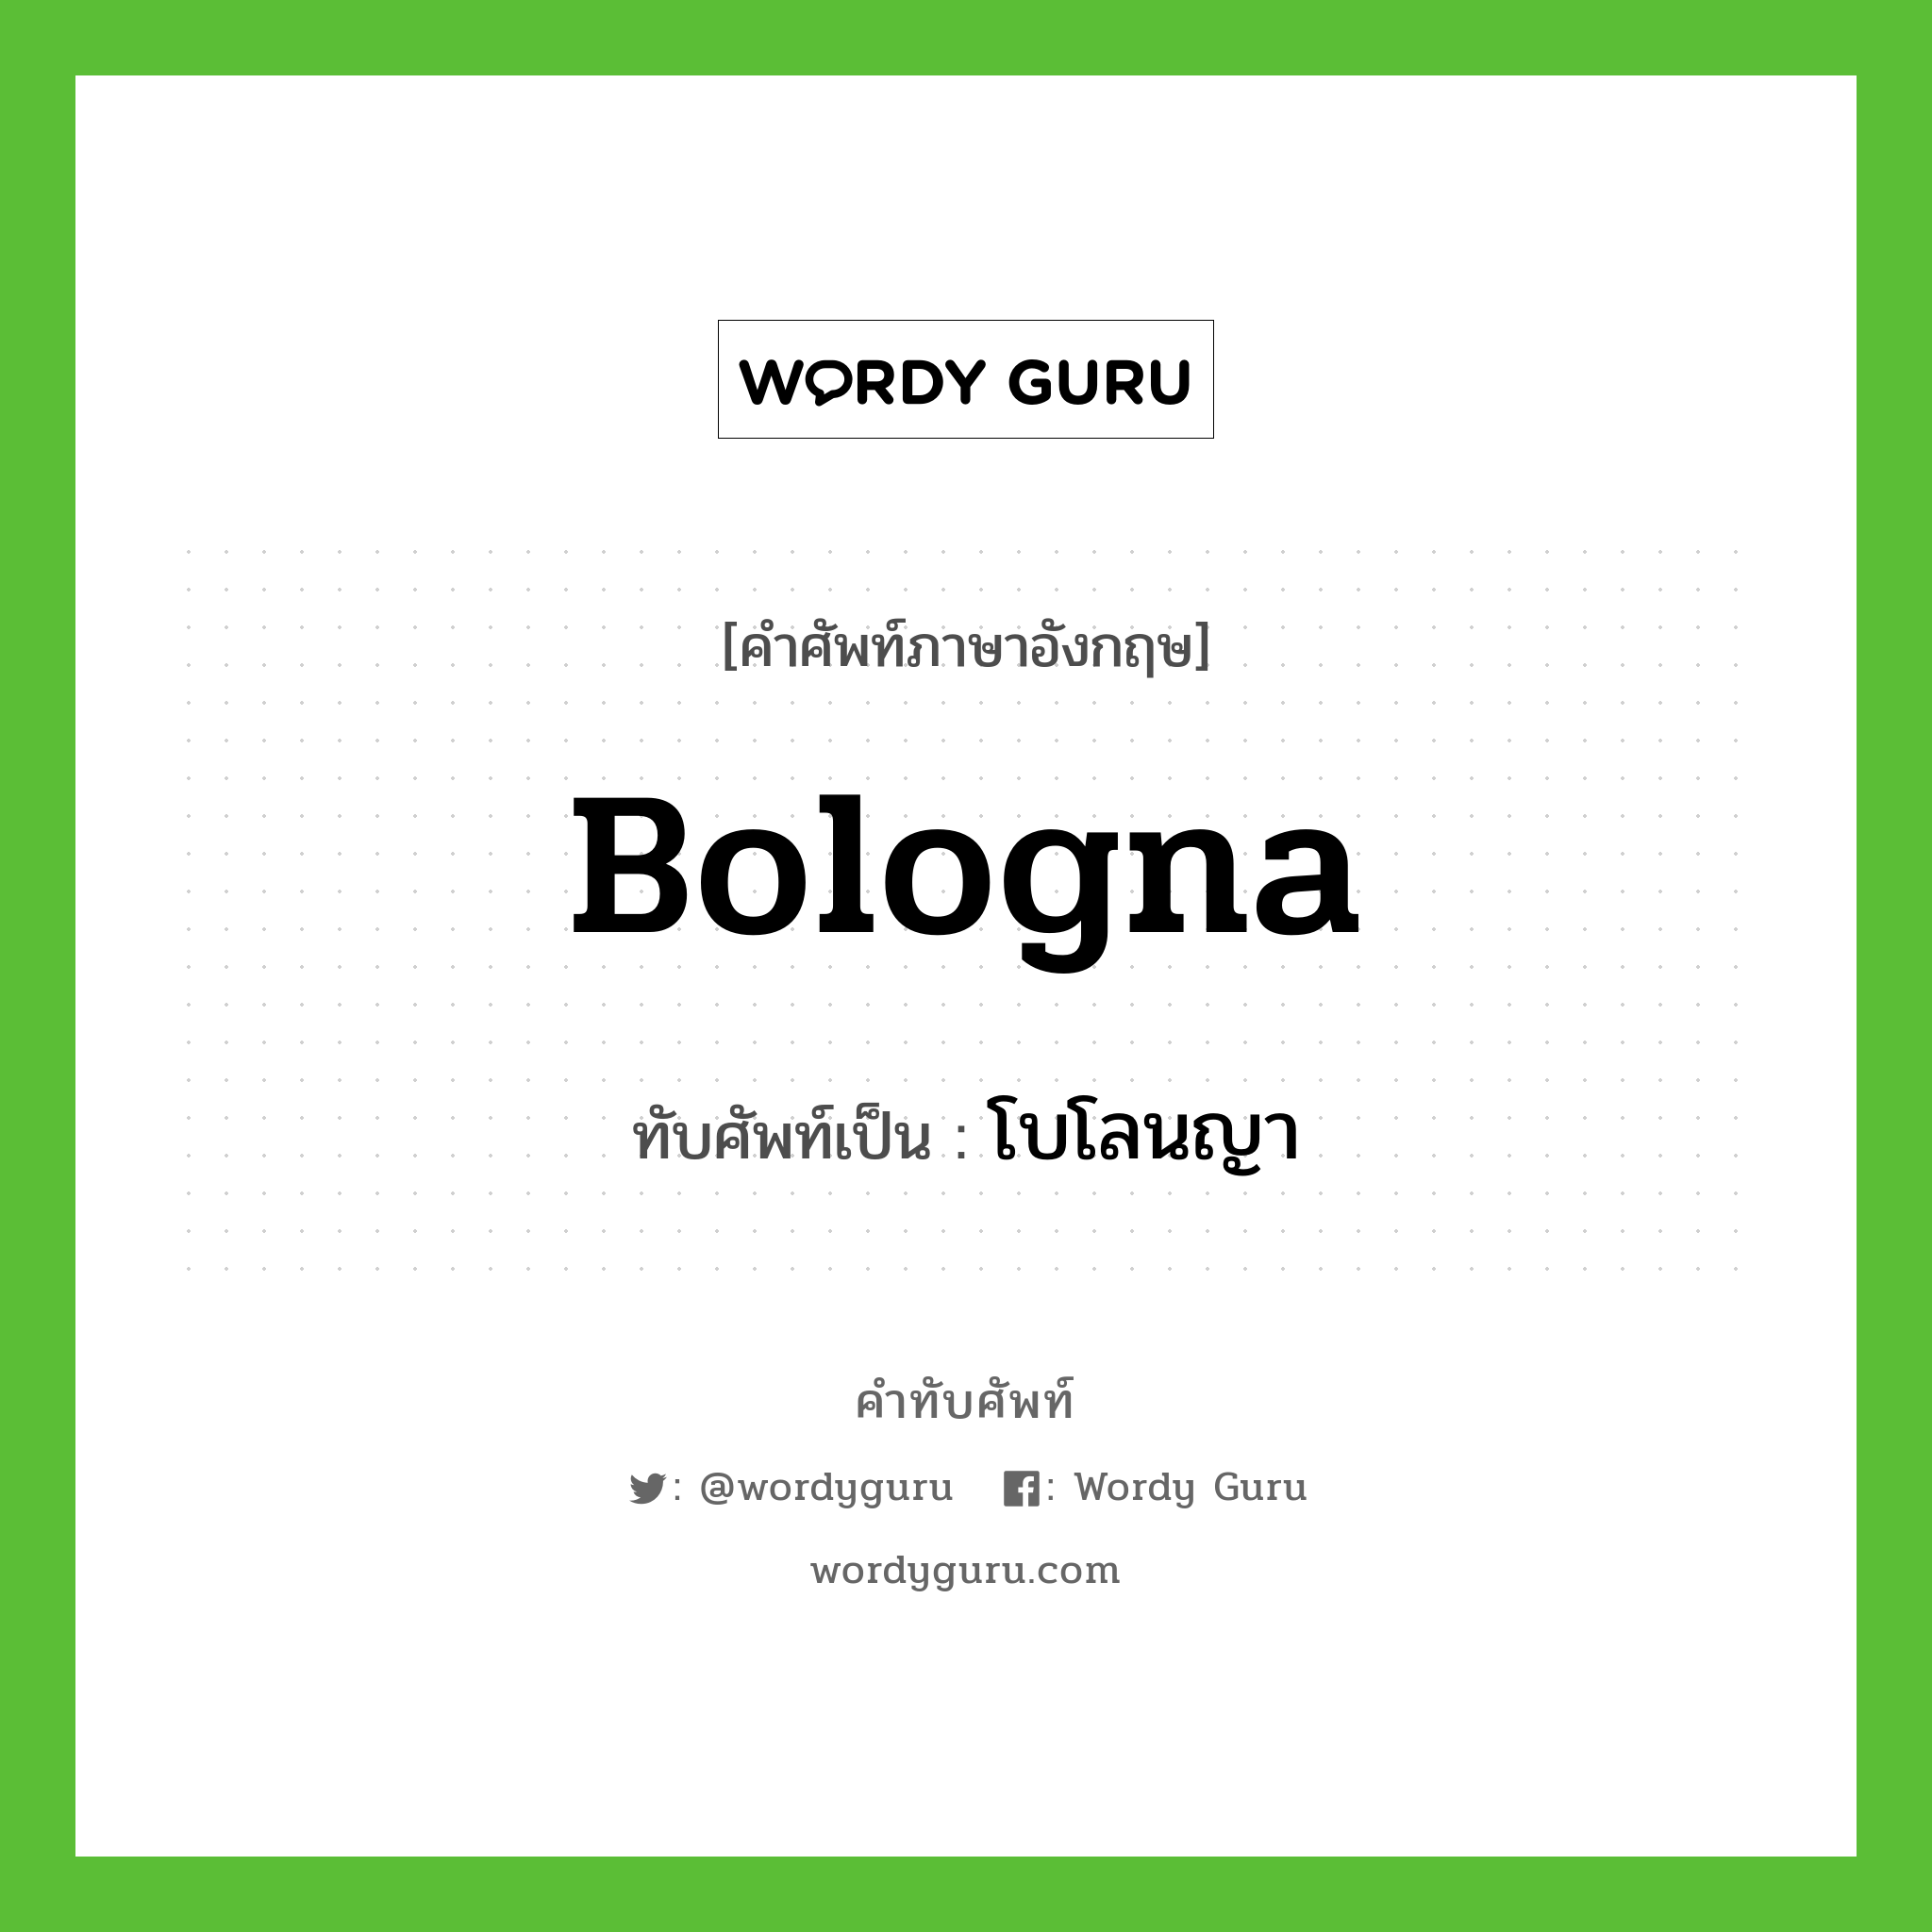 Bologna เขียนเป็นคำไทยว่าอะไร?, คำศัพท์ภาษาอังกฤษ Bologna ทับศัพท์เป็น โบโลนญา